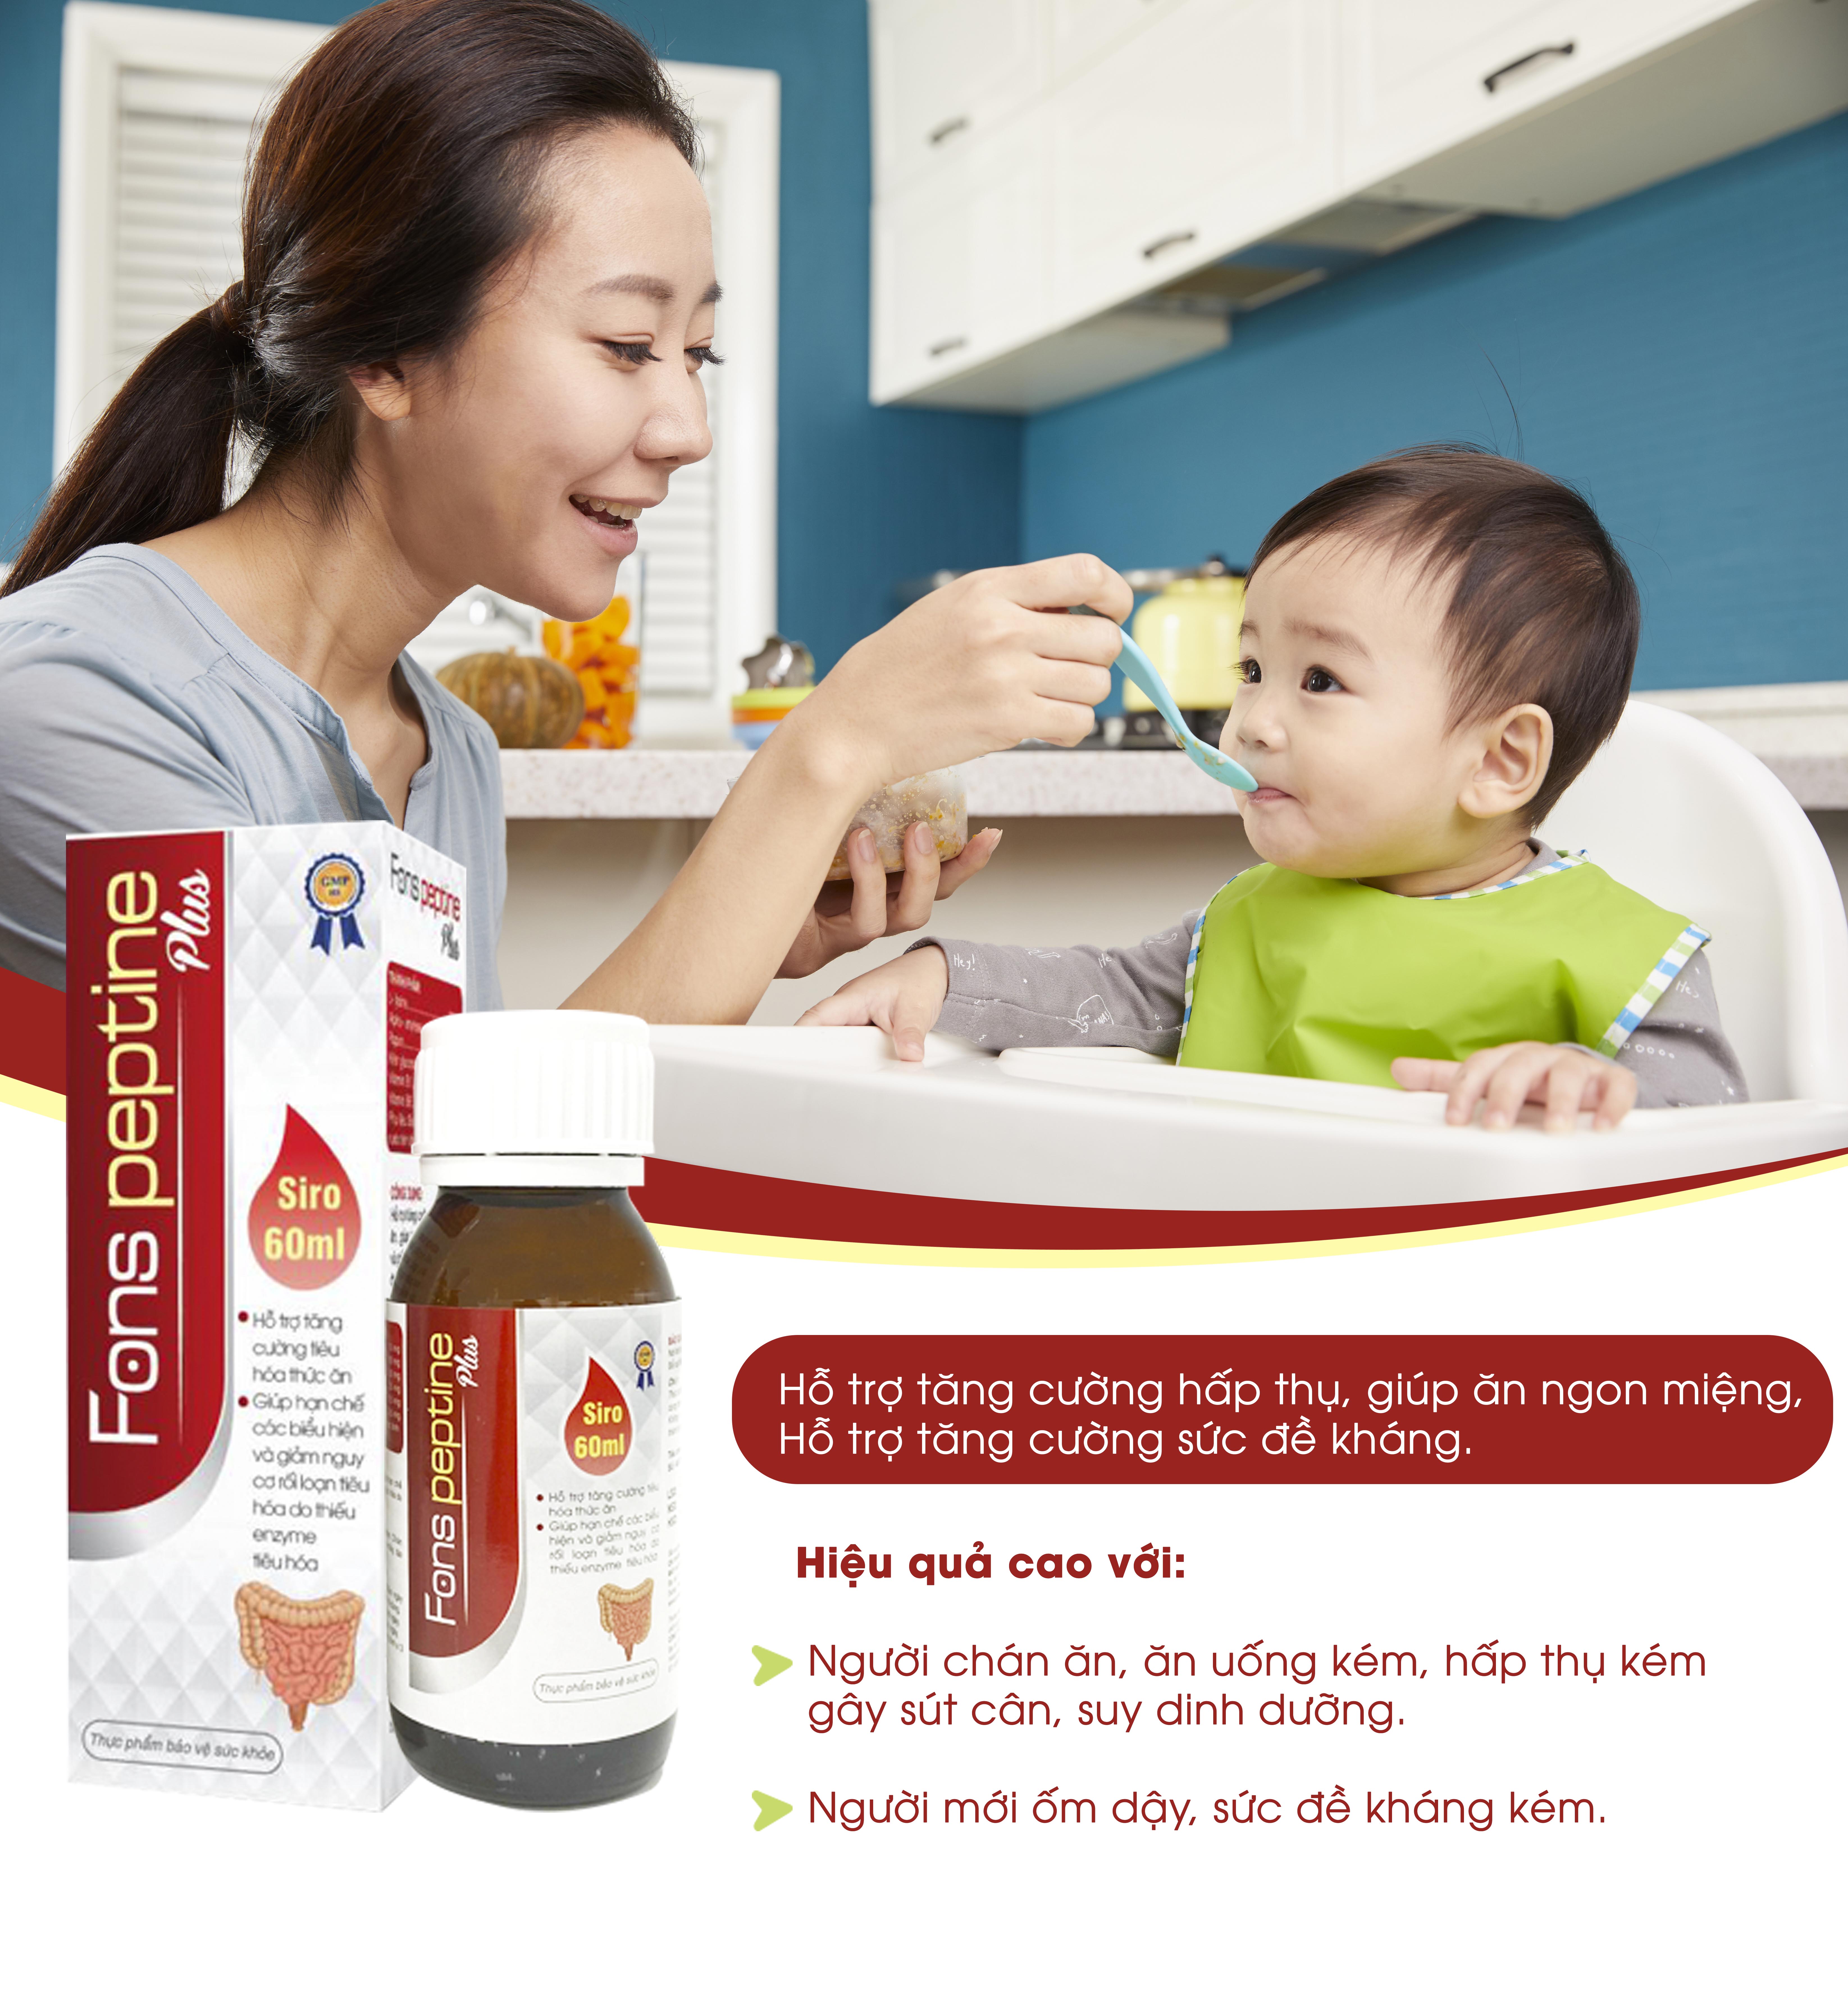 Hỗ trợ tăng cường tiêu hoá, giảm nguy cơ rối loạn tiêu hoá cho bé - FonsPeptine Plus - 60ml